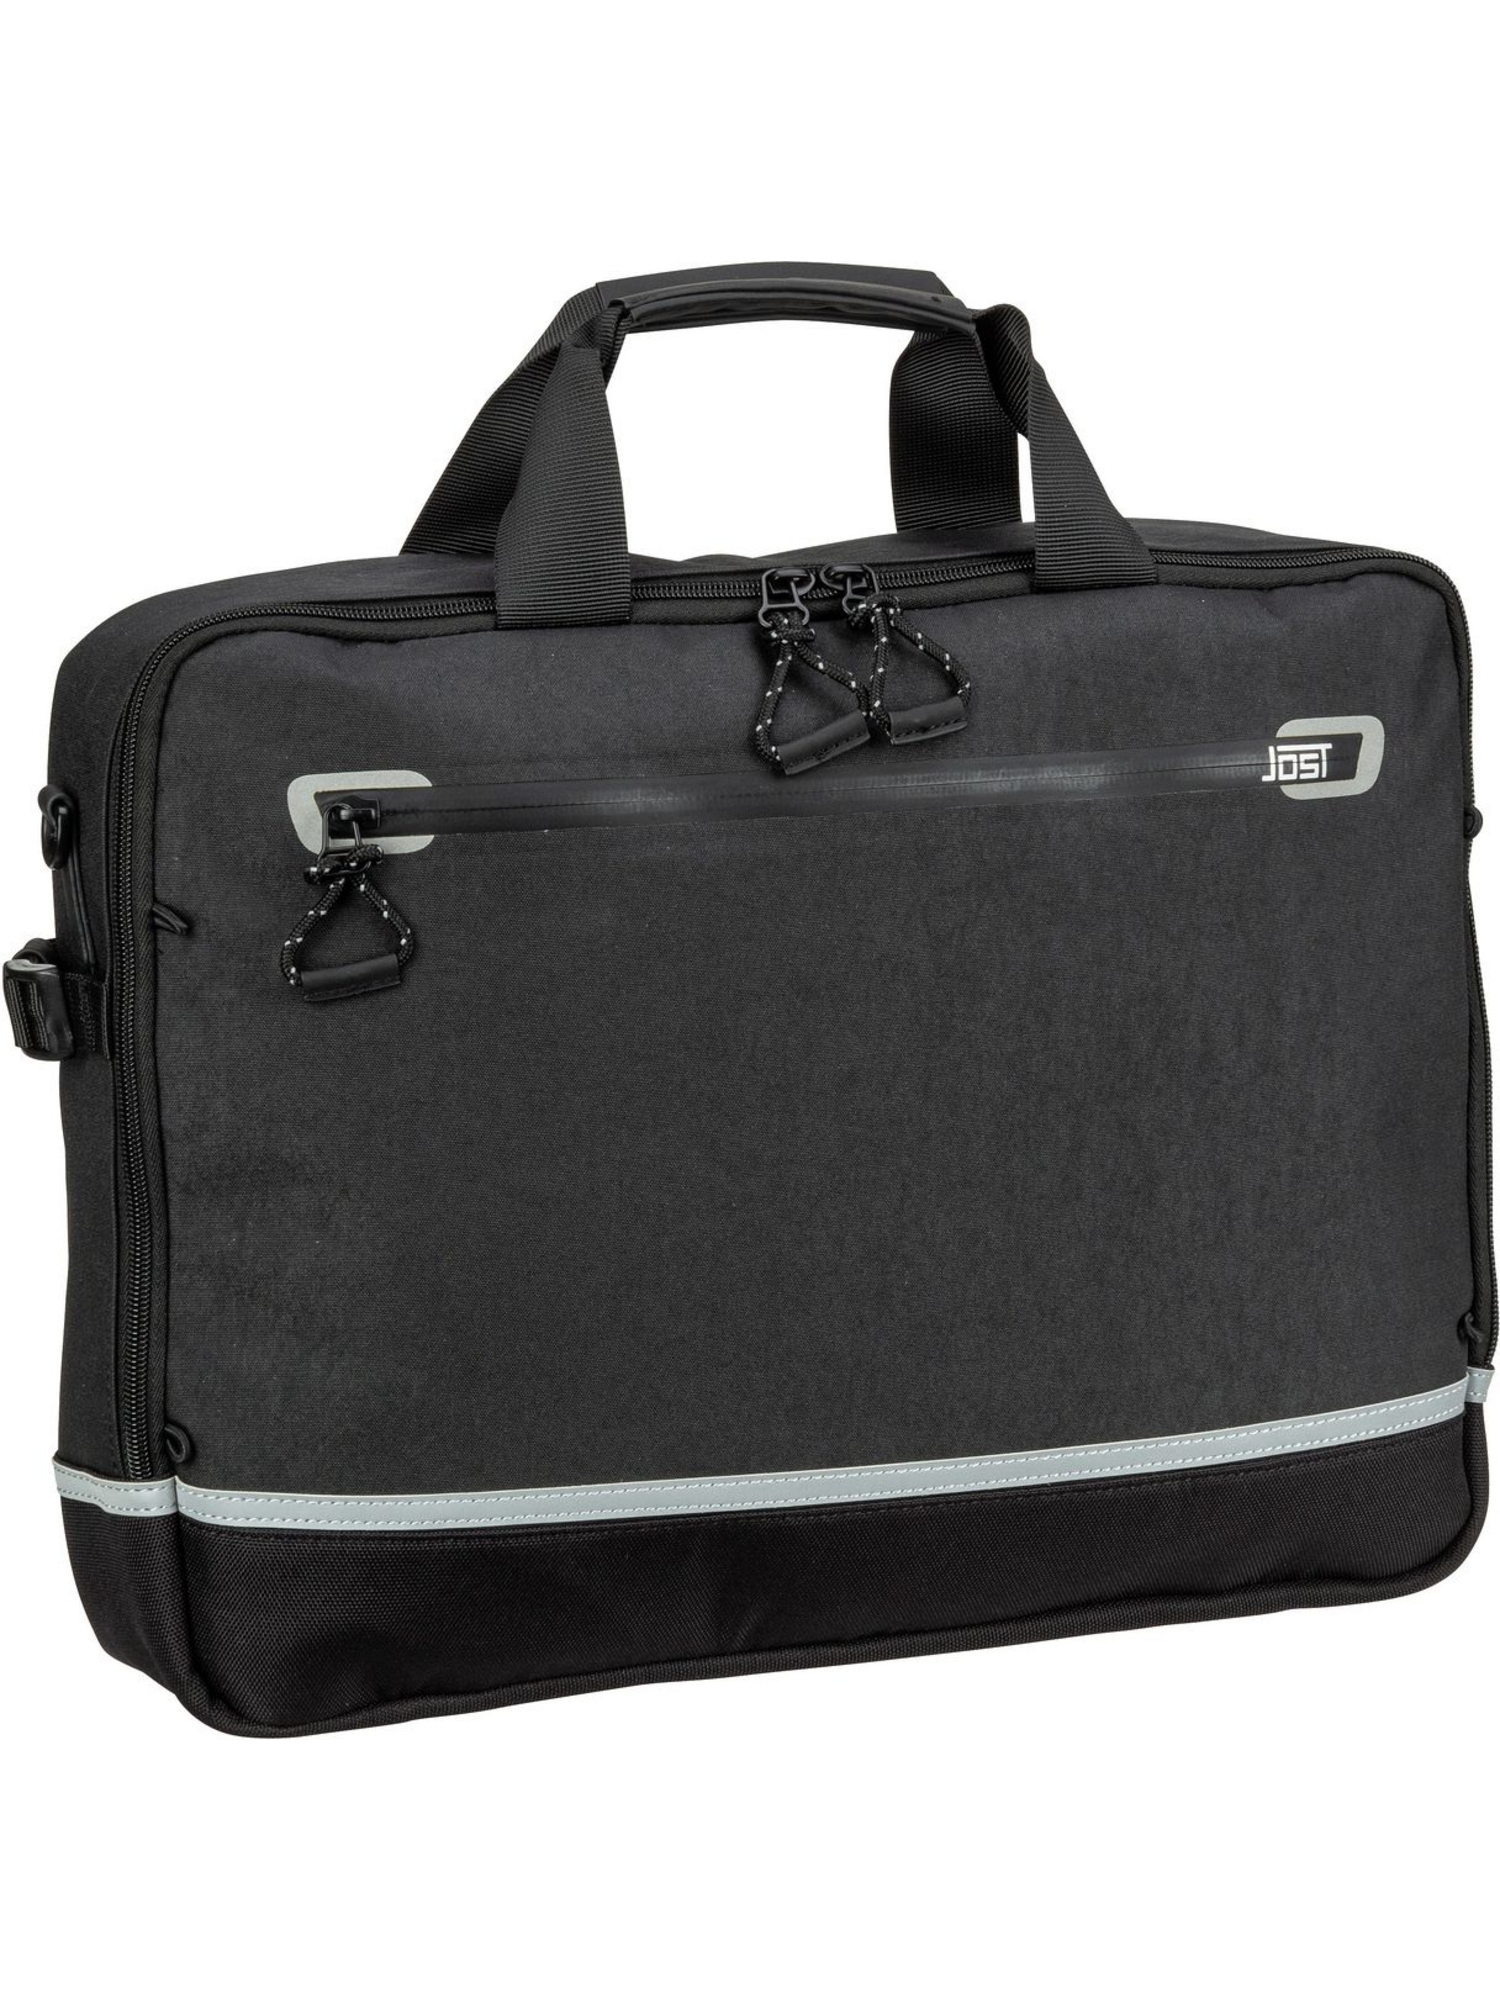 Сумка для ноутбука Jost Lillehammer Business Bag 1 Comp, черный